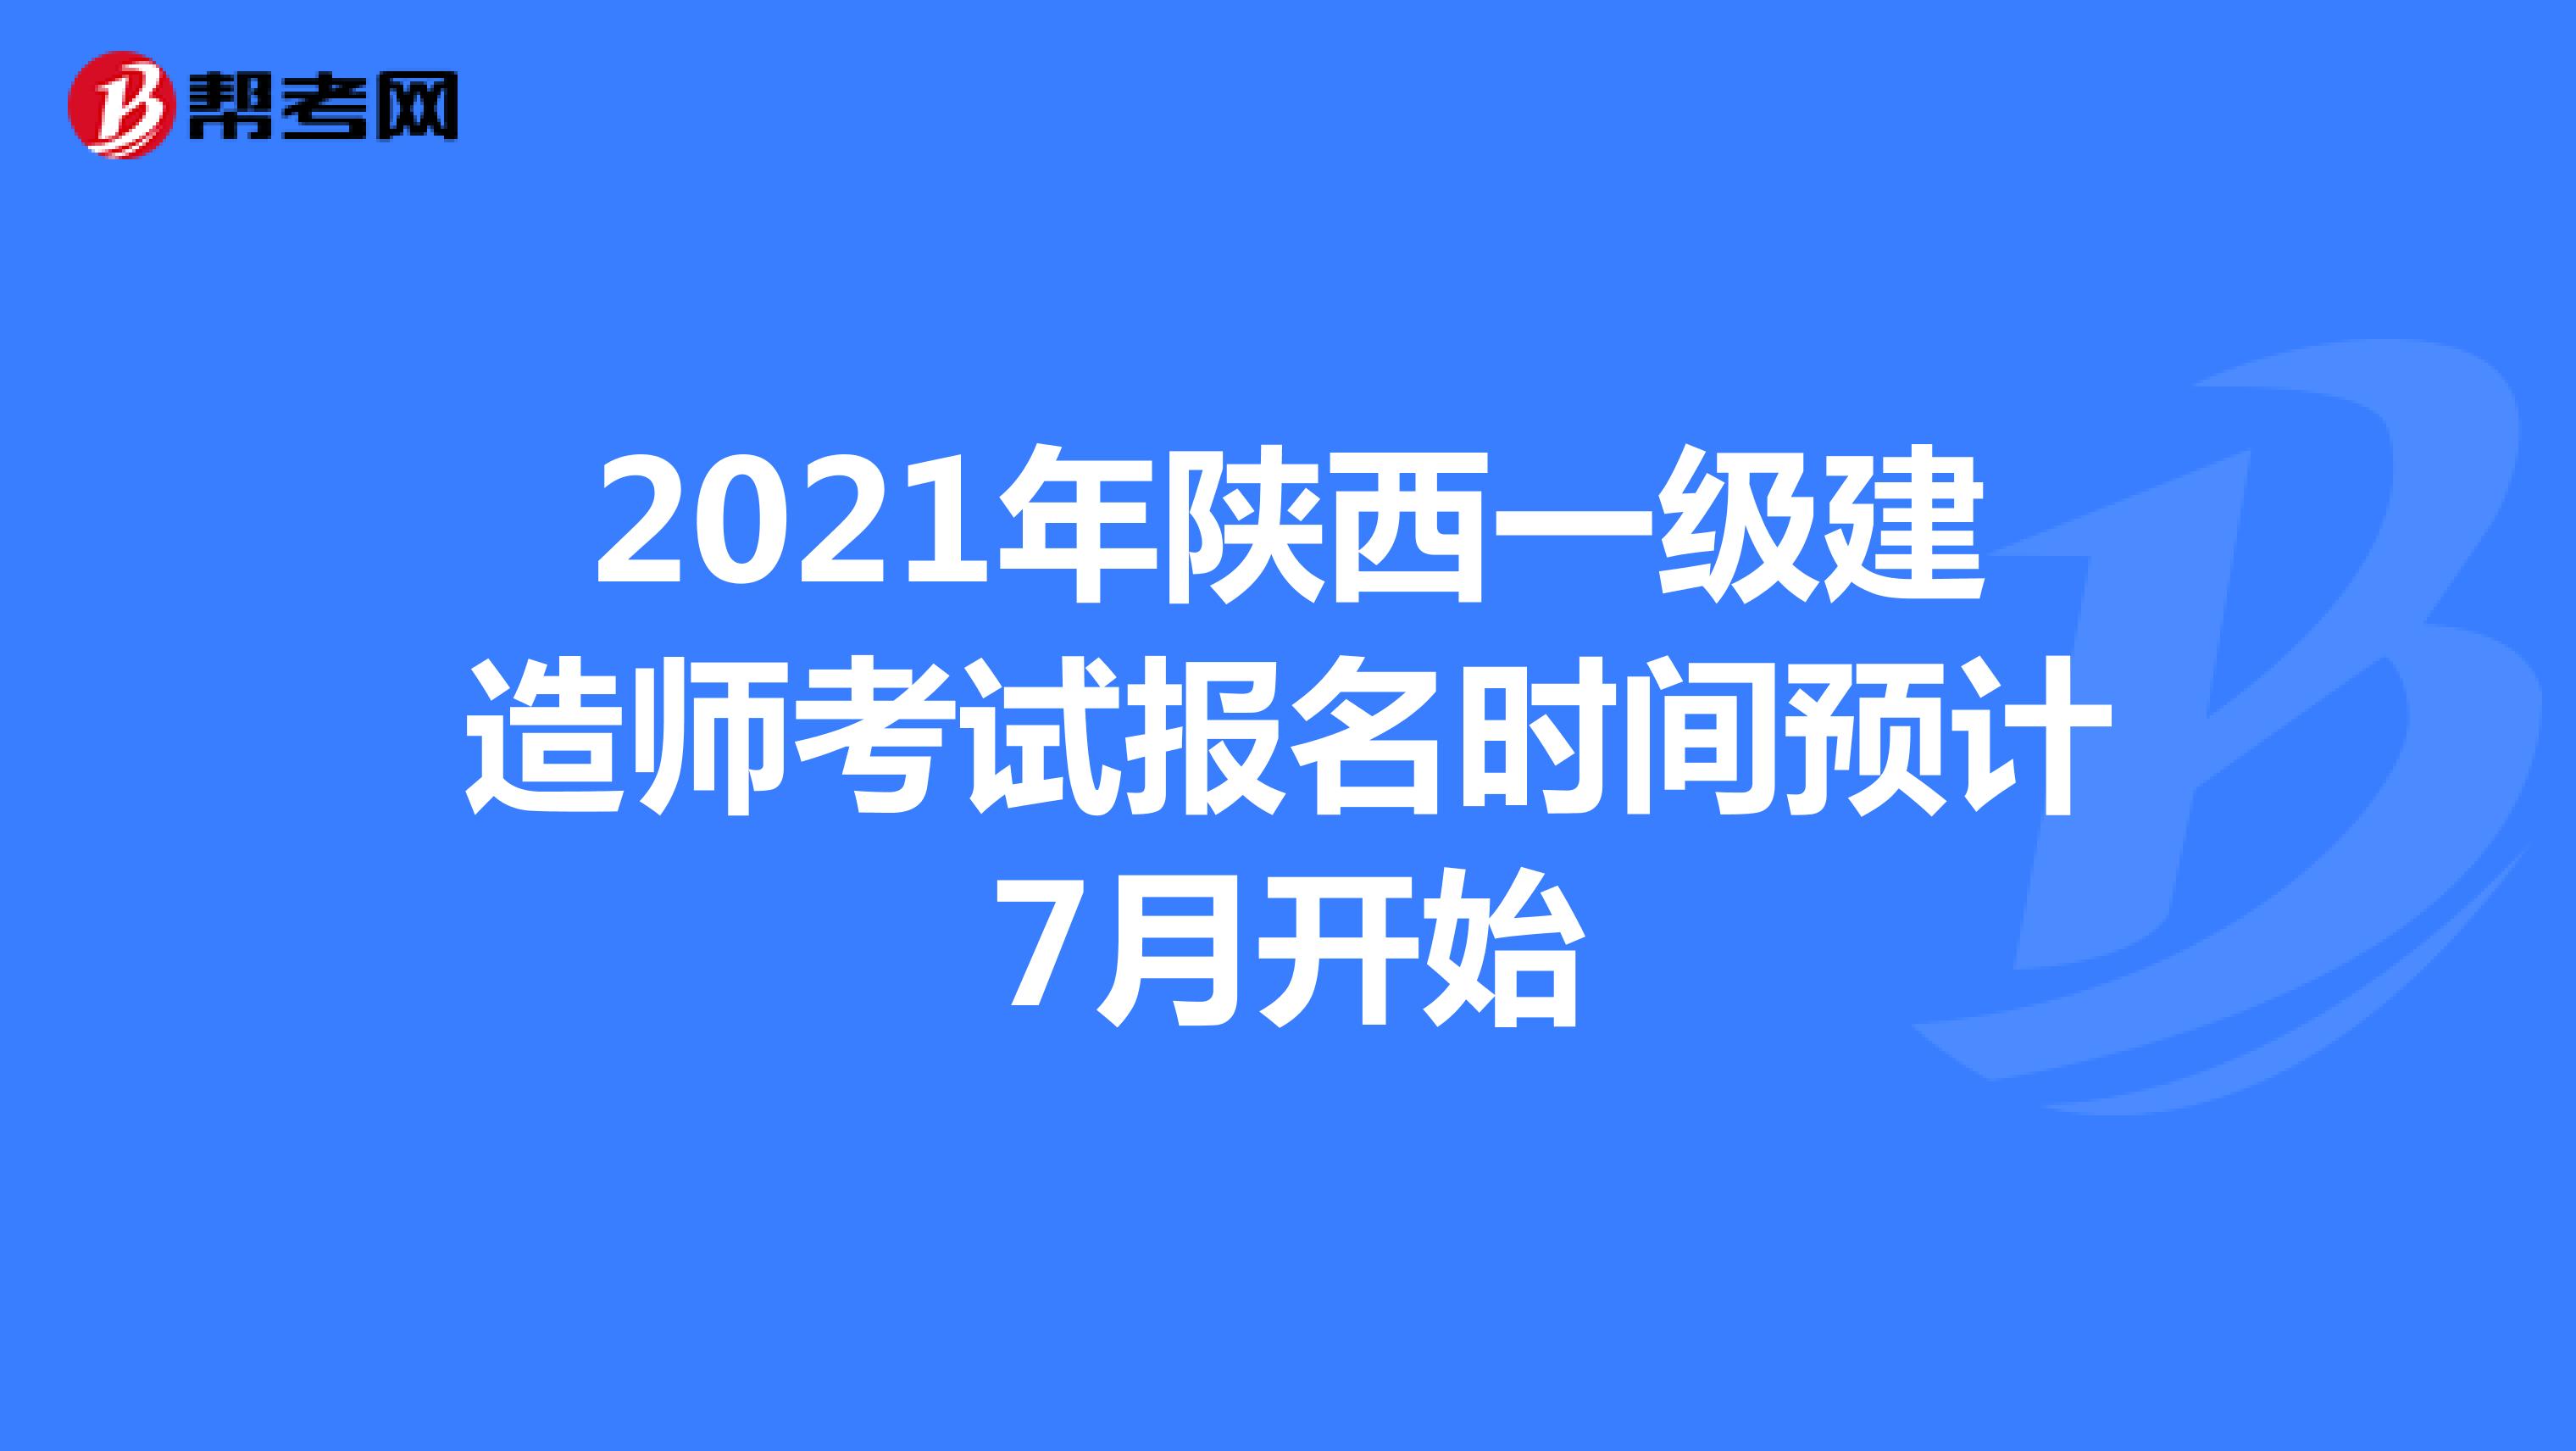 2021年陕西一级建造师考试报名时间预计7月开始